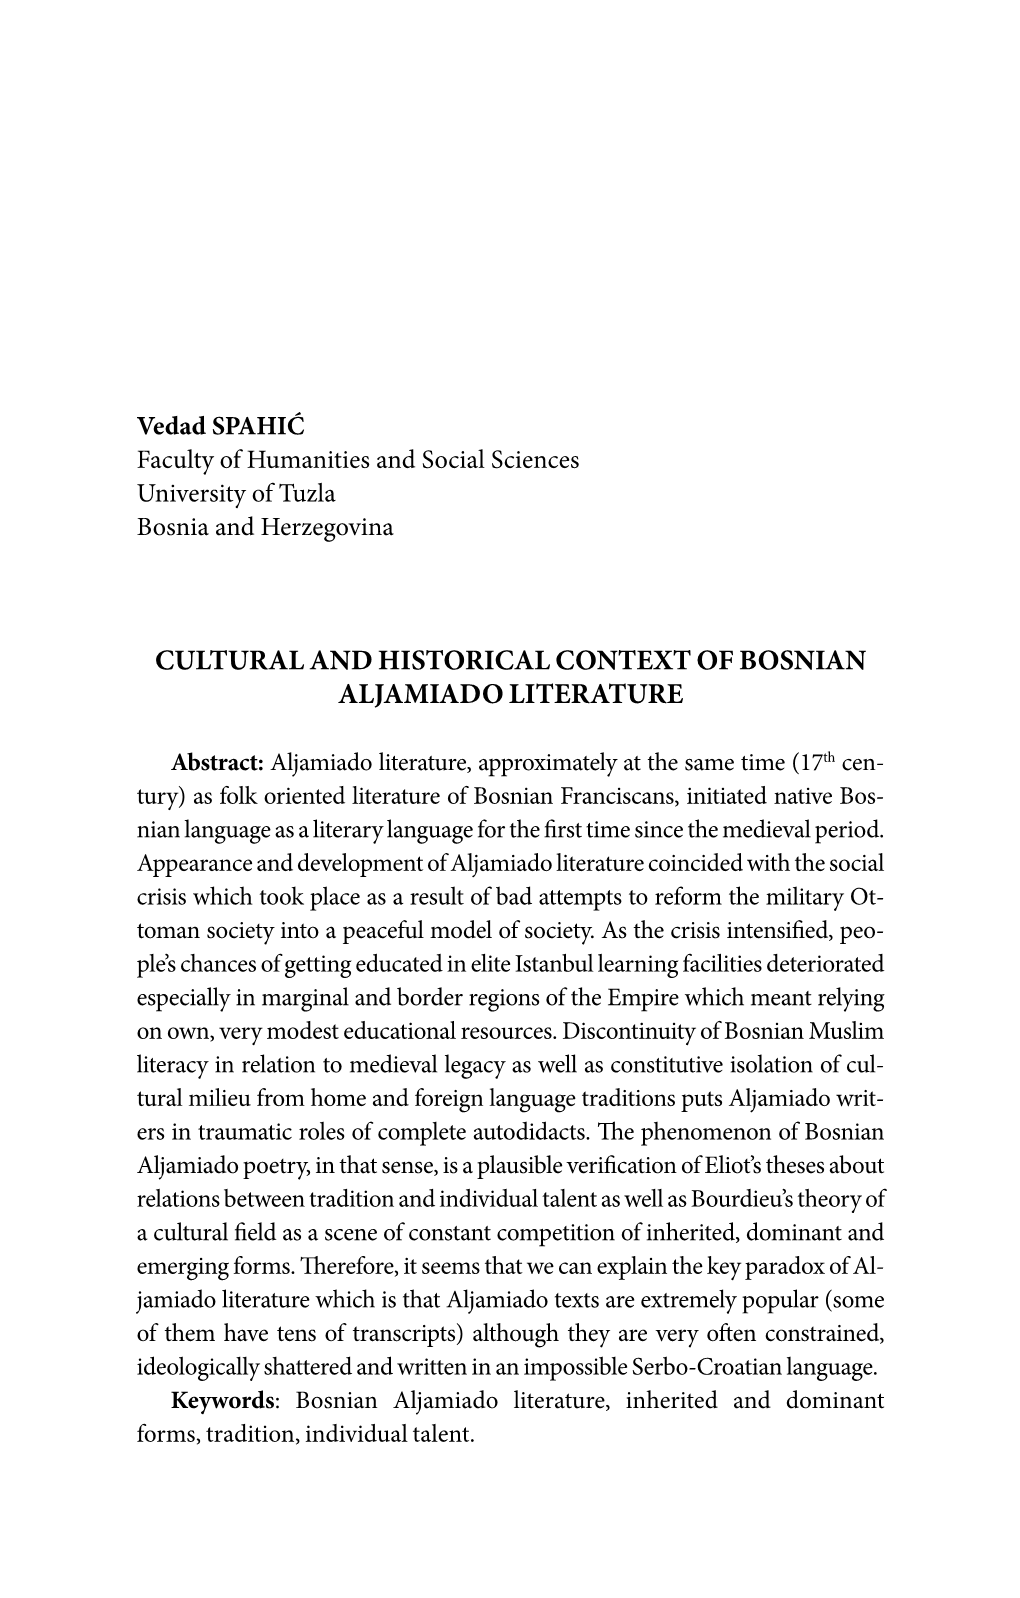 Cultural and Historical Context of Bosnian Aljamiado Literature